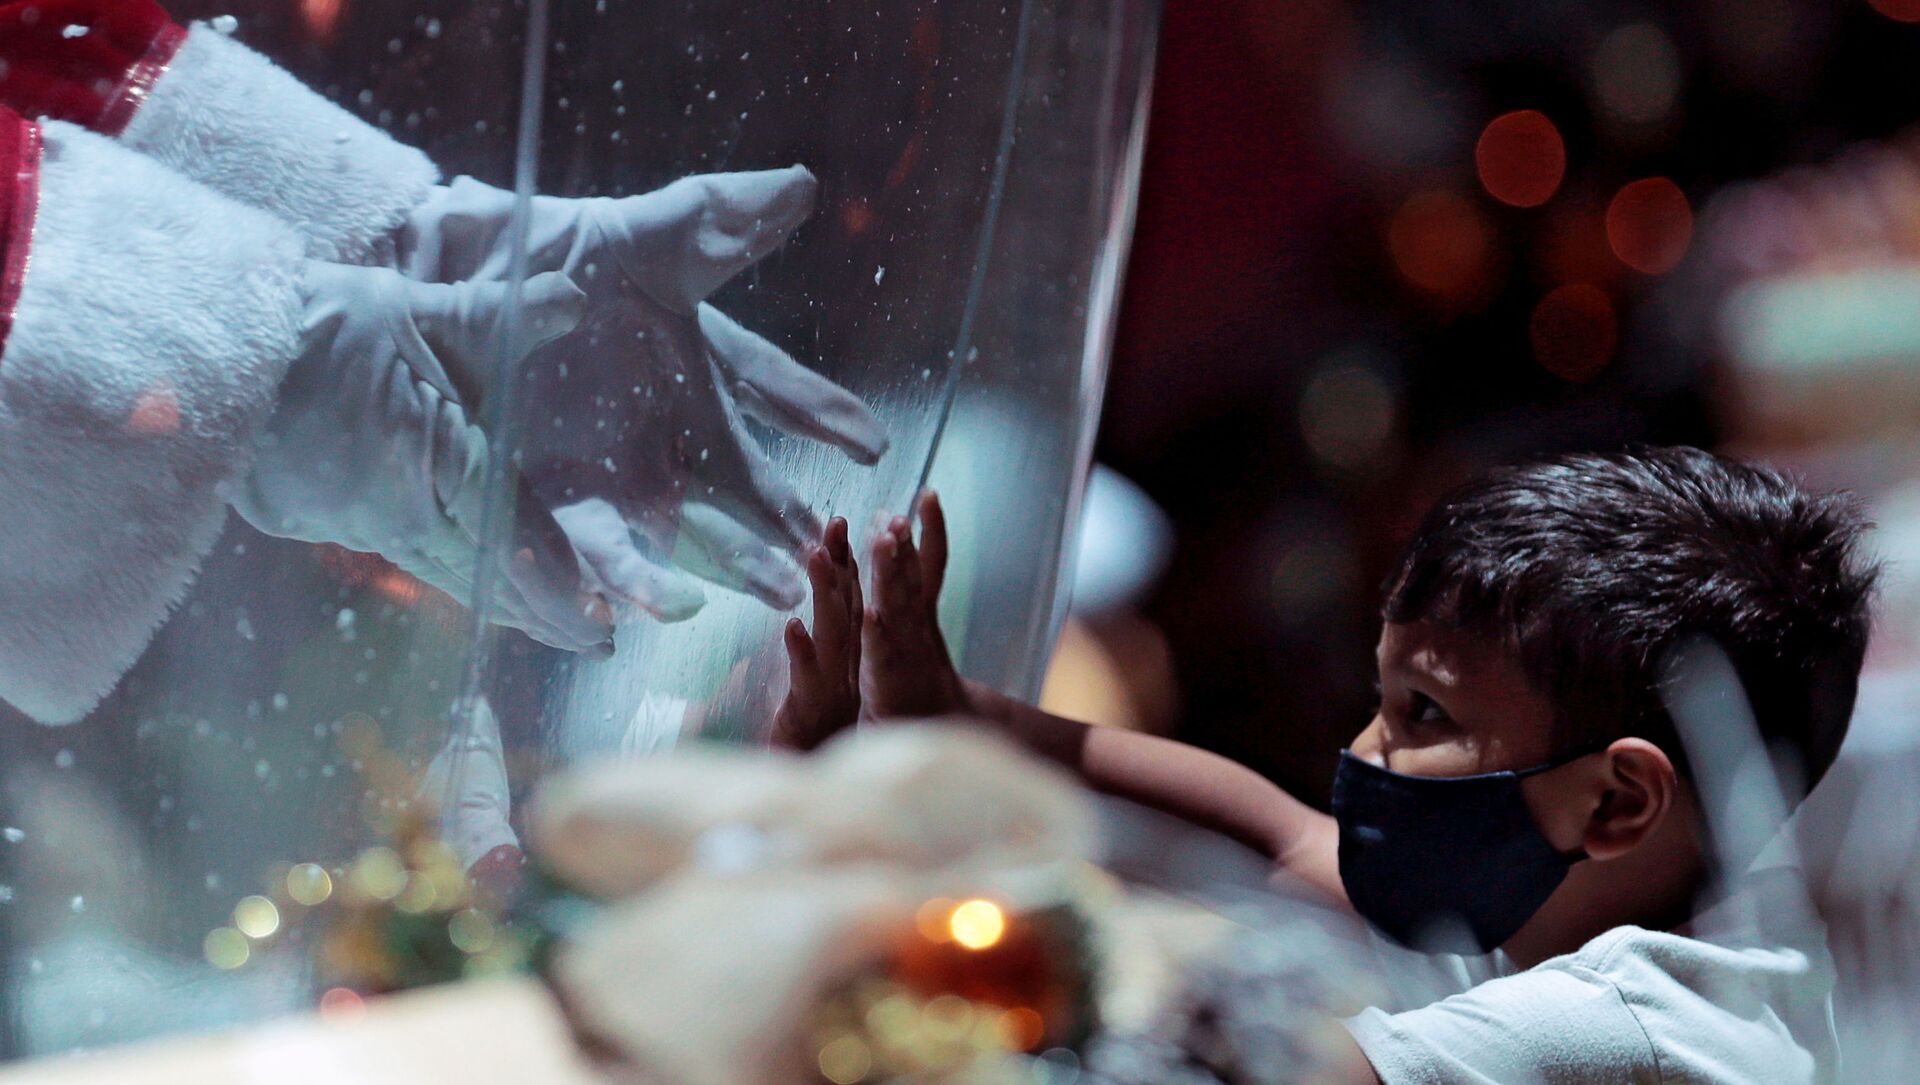 أبيليو دا كروز بينتو، 77 عامًا، يرتدي زي بابا نويل داخل فقاعة بلاستيكية، يحيي طفلًا في مركز تسوق وسط تفشي فيروس كورونا (كوفيد-19) في برازيليا، البرازيل، 15 ديسمبر 2020. - سبوتنيك عربي, 1920, 23.03.2021